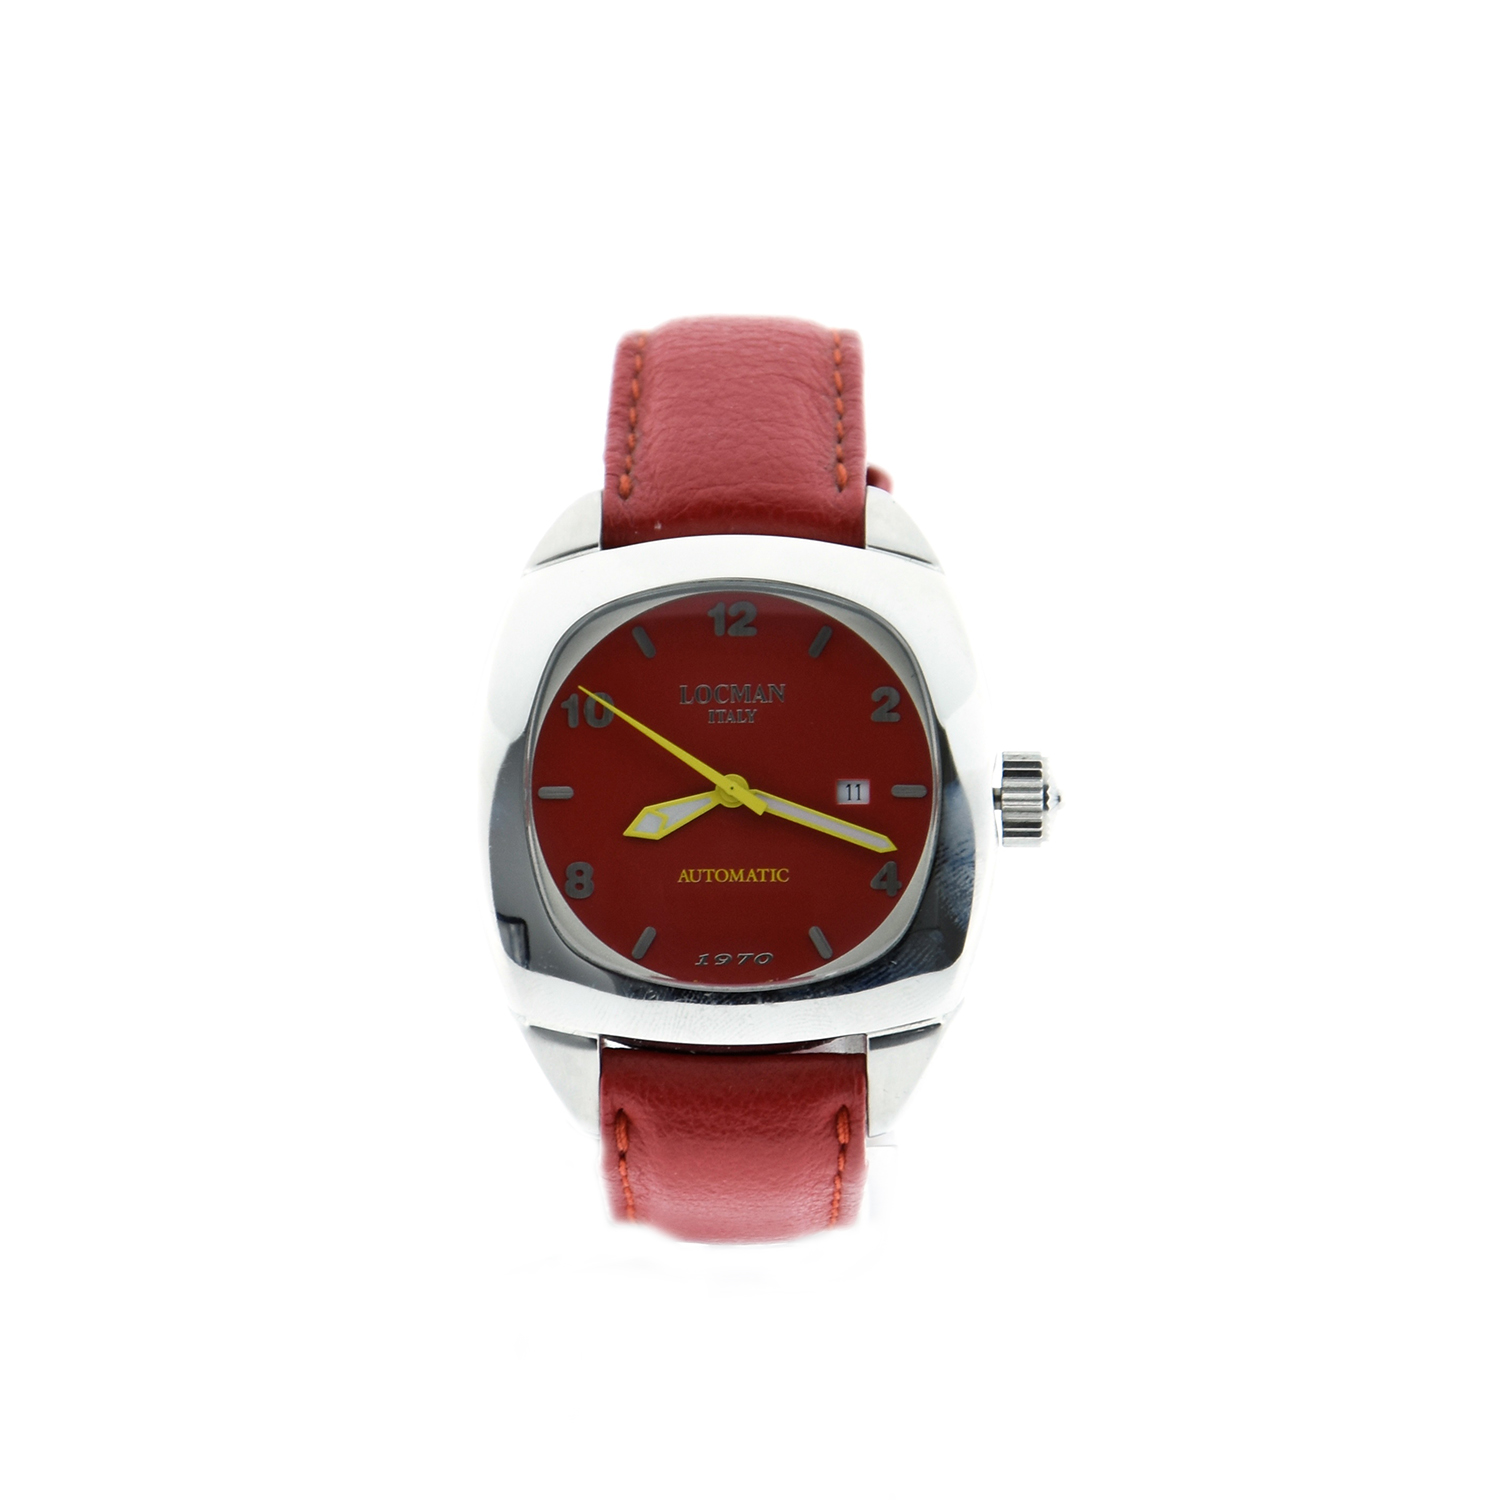 Orologio Locman automatico movimento svizzero vetro zaffiro modello 1970 cassa acciaio cinturino pelle rossa